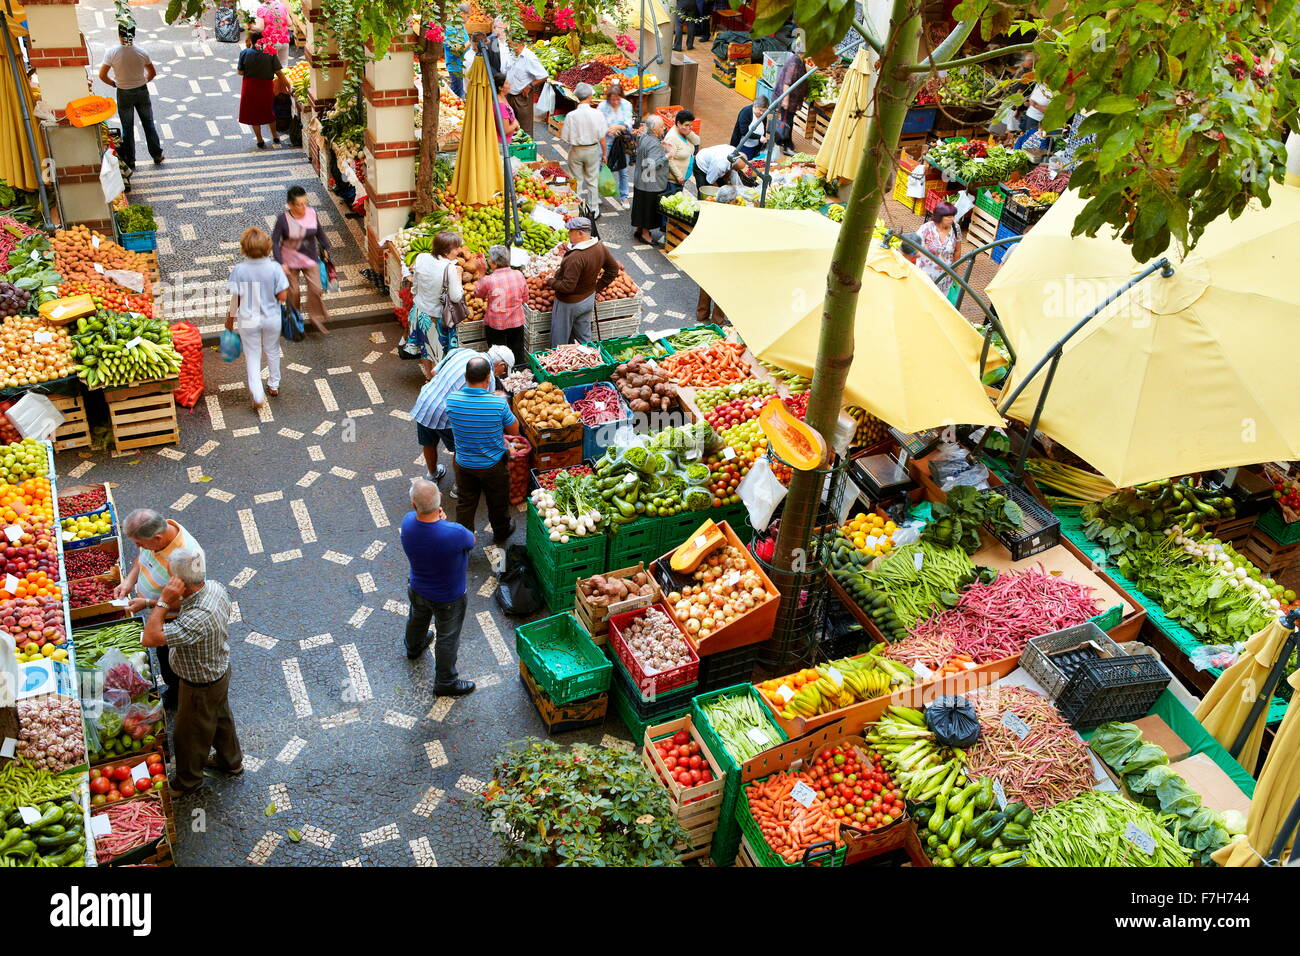 Mercado dos Lavradores, frutta e verdura fresca nel mercato di Funchal, l'isola di Madeira, Portogallo Foto Stock